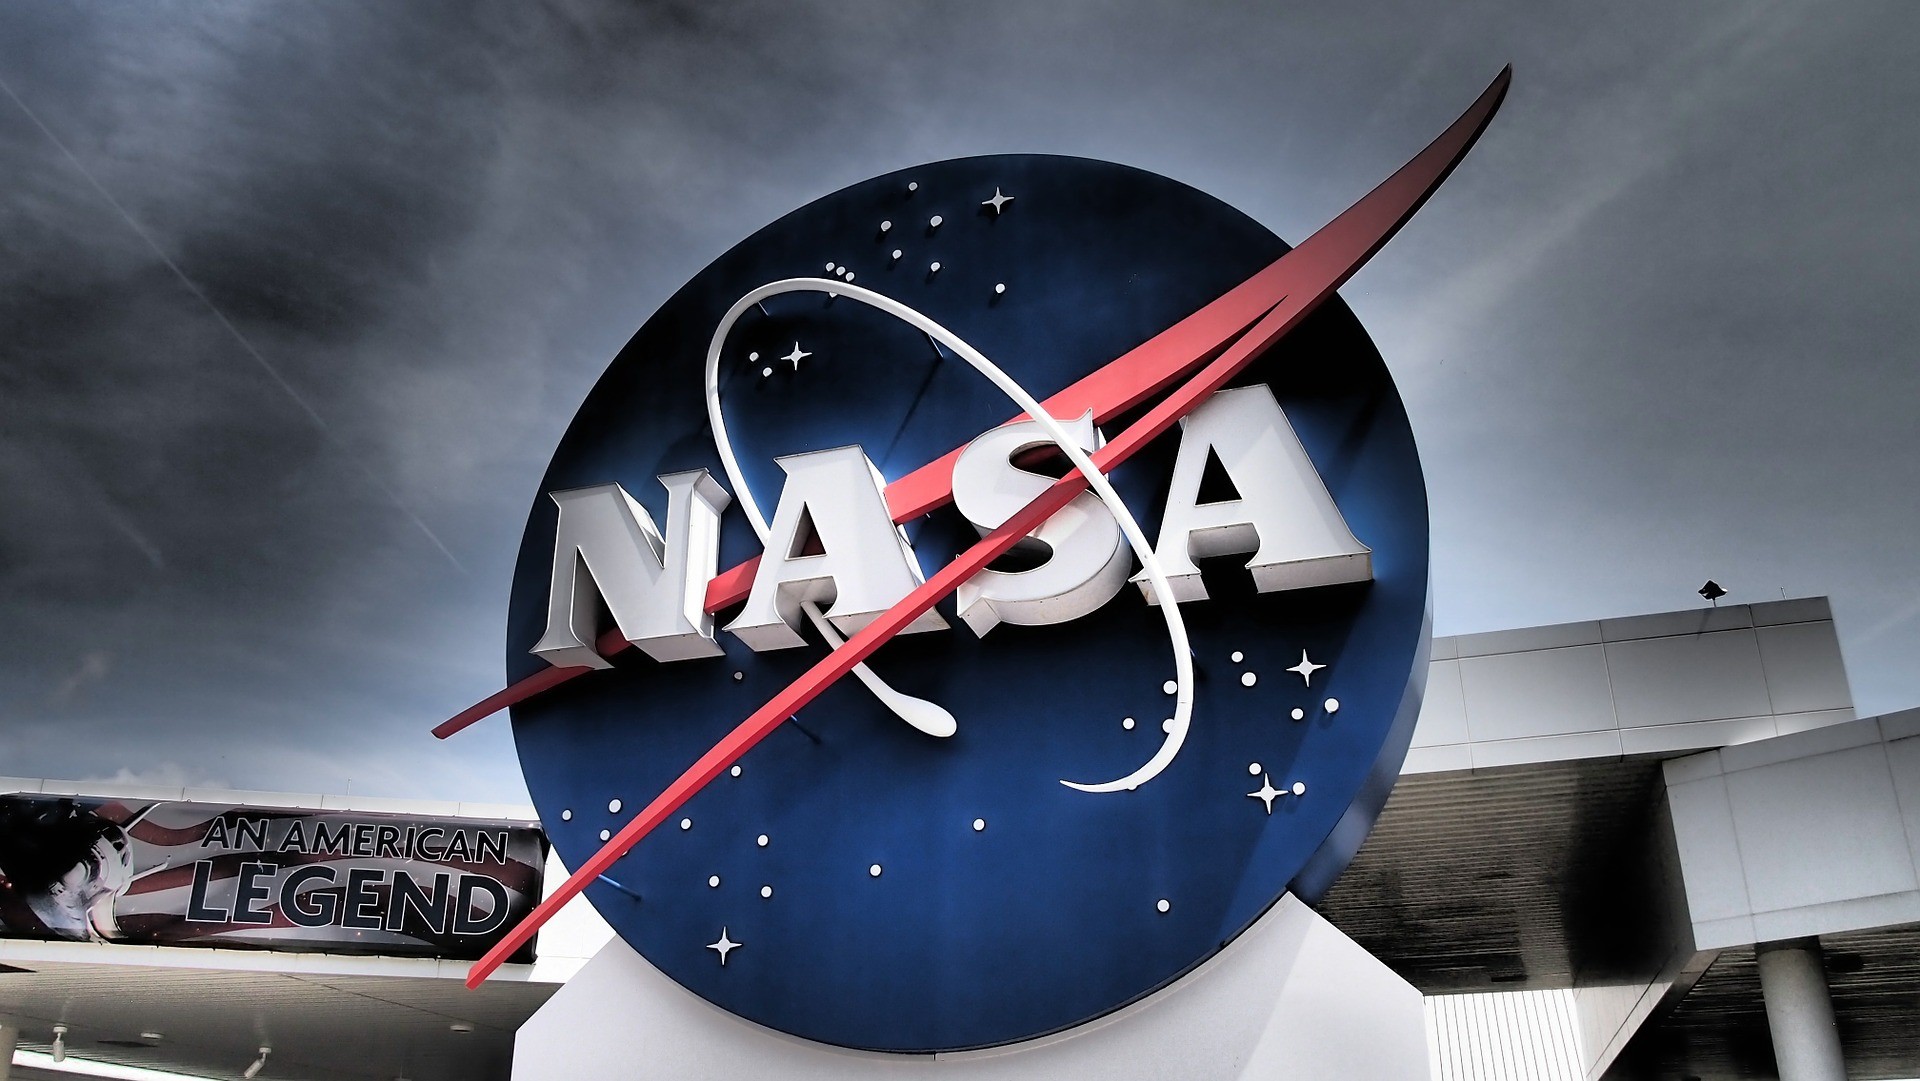 Ιστορική στιγμή για τη NASA – Αντίστροφη μέτρηση για την εκτόξευση του Artemis 1